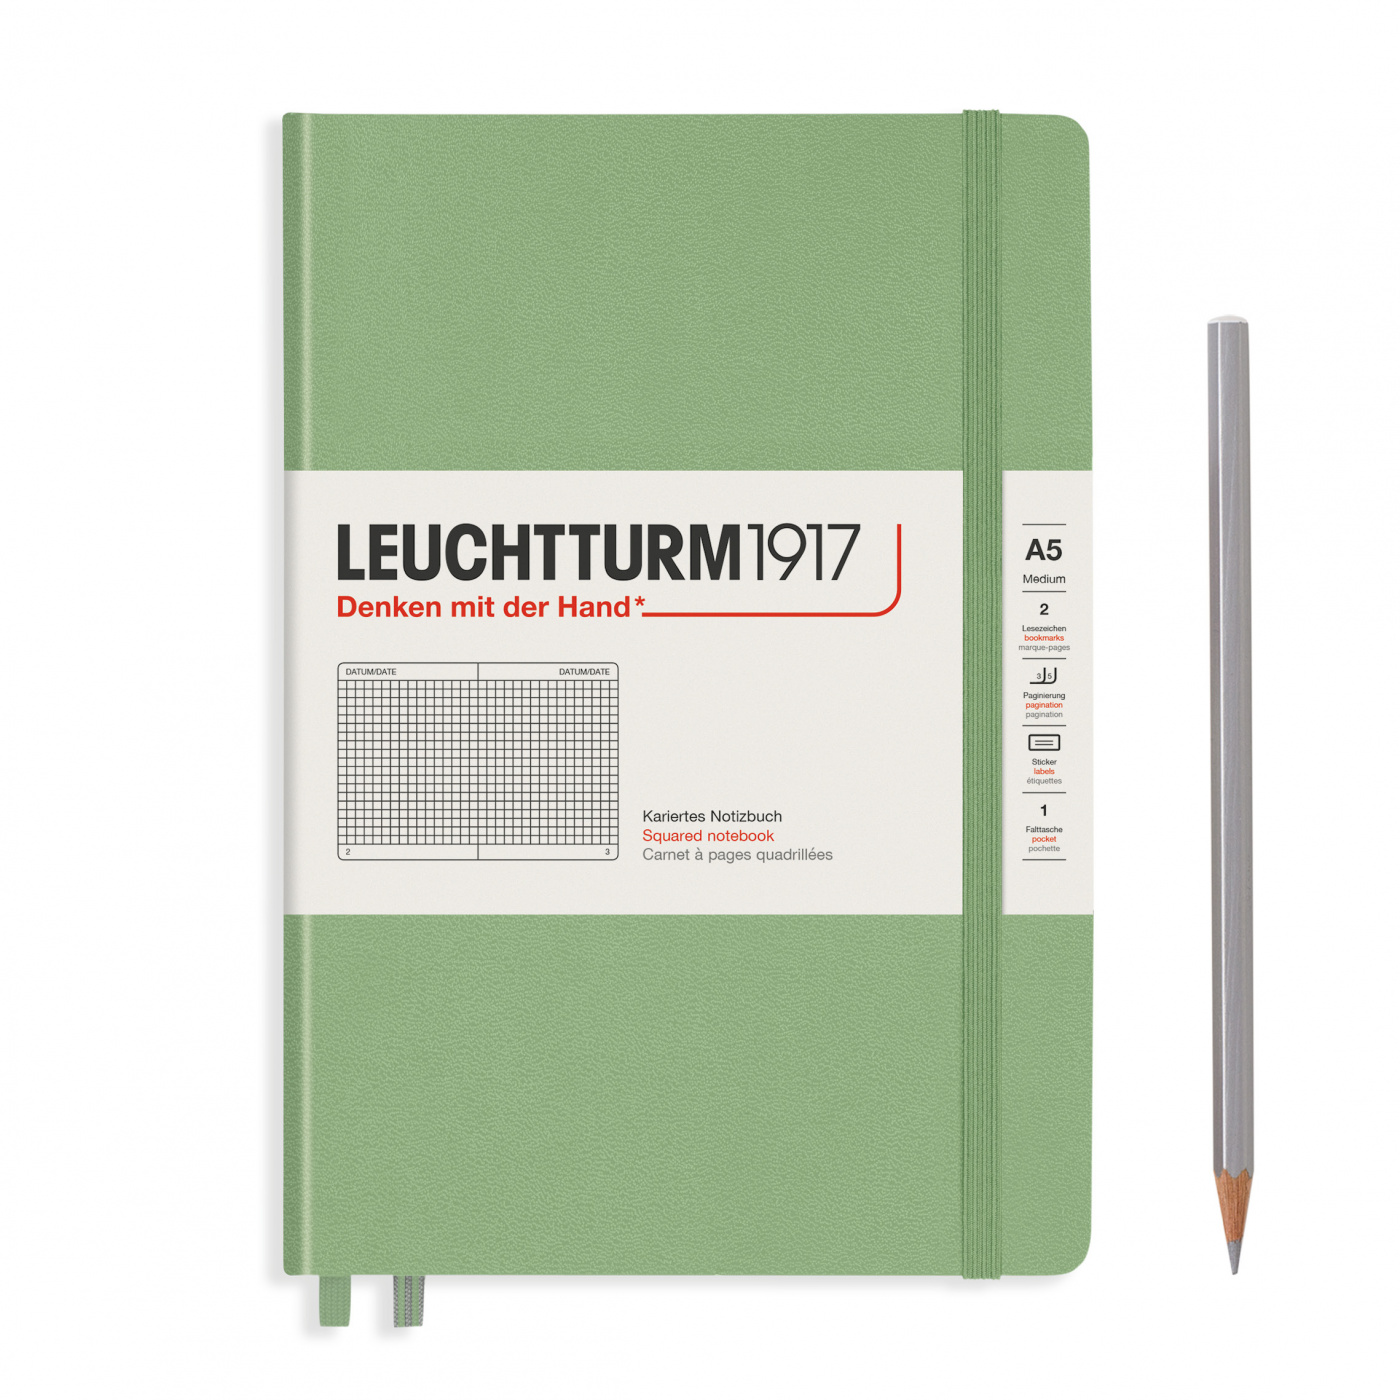 Записная книжка в клетку Leuchtturm A5 251 стр., твердая обложка пастельный зеленый энциклопедия в твёрдом переплёте что откуда берётся 64 стр